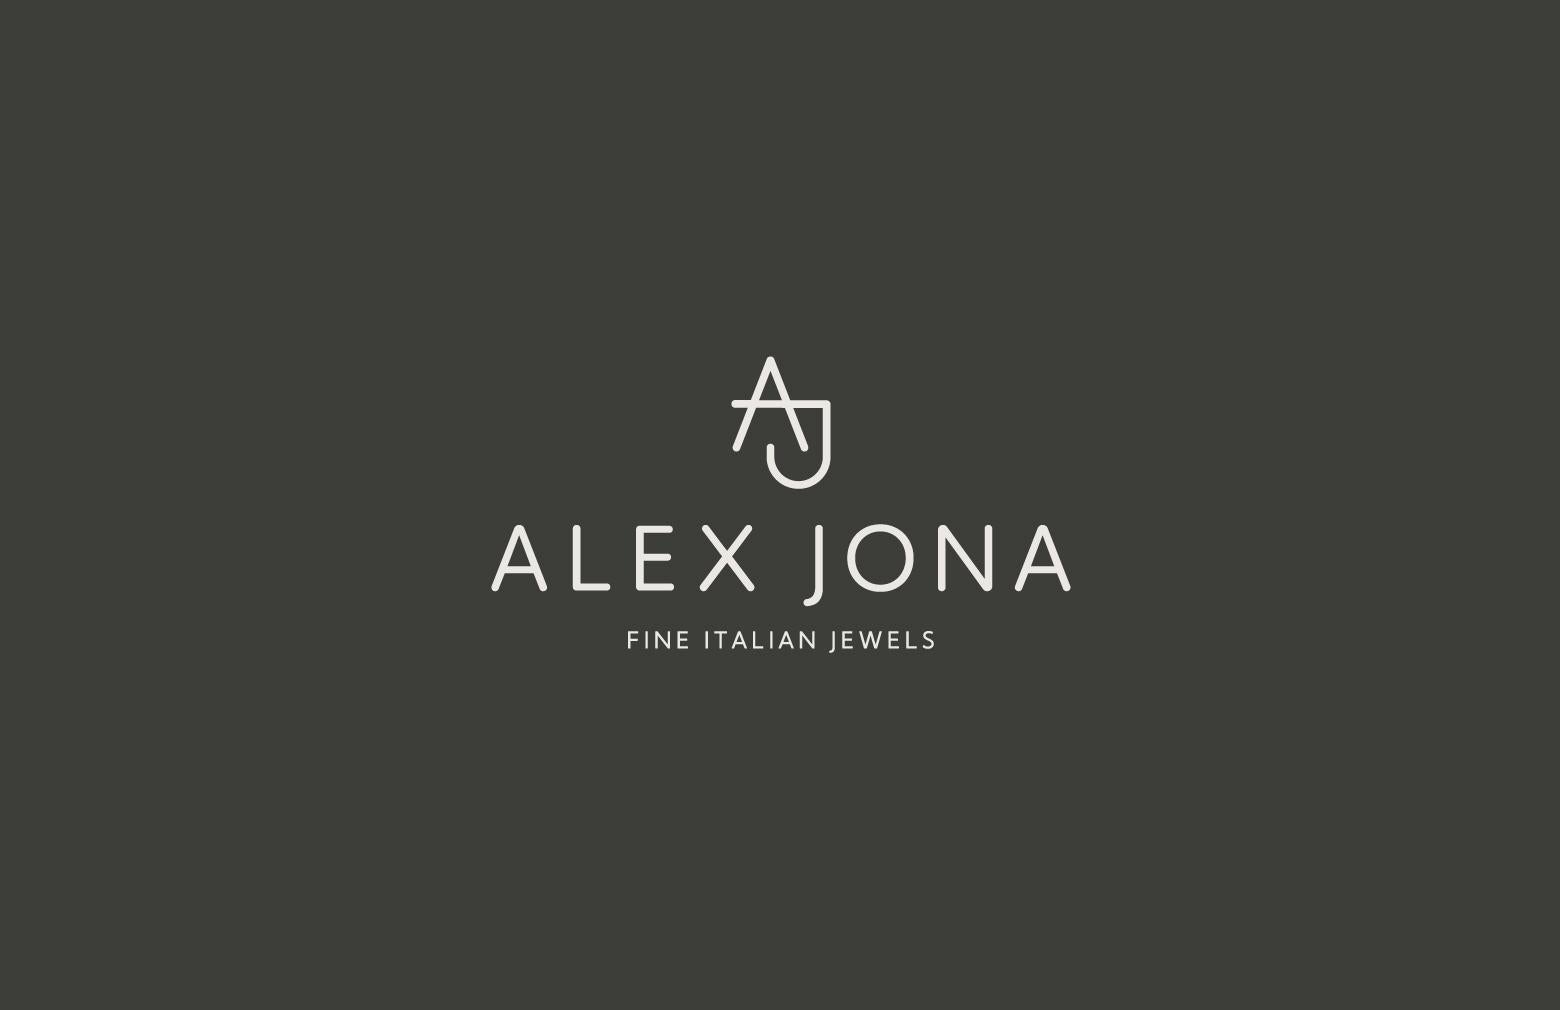 Alex Jona Onda White Diamond White Gold Band Ring  10